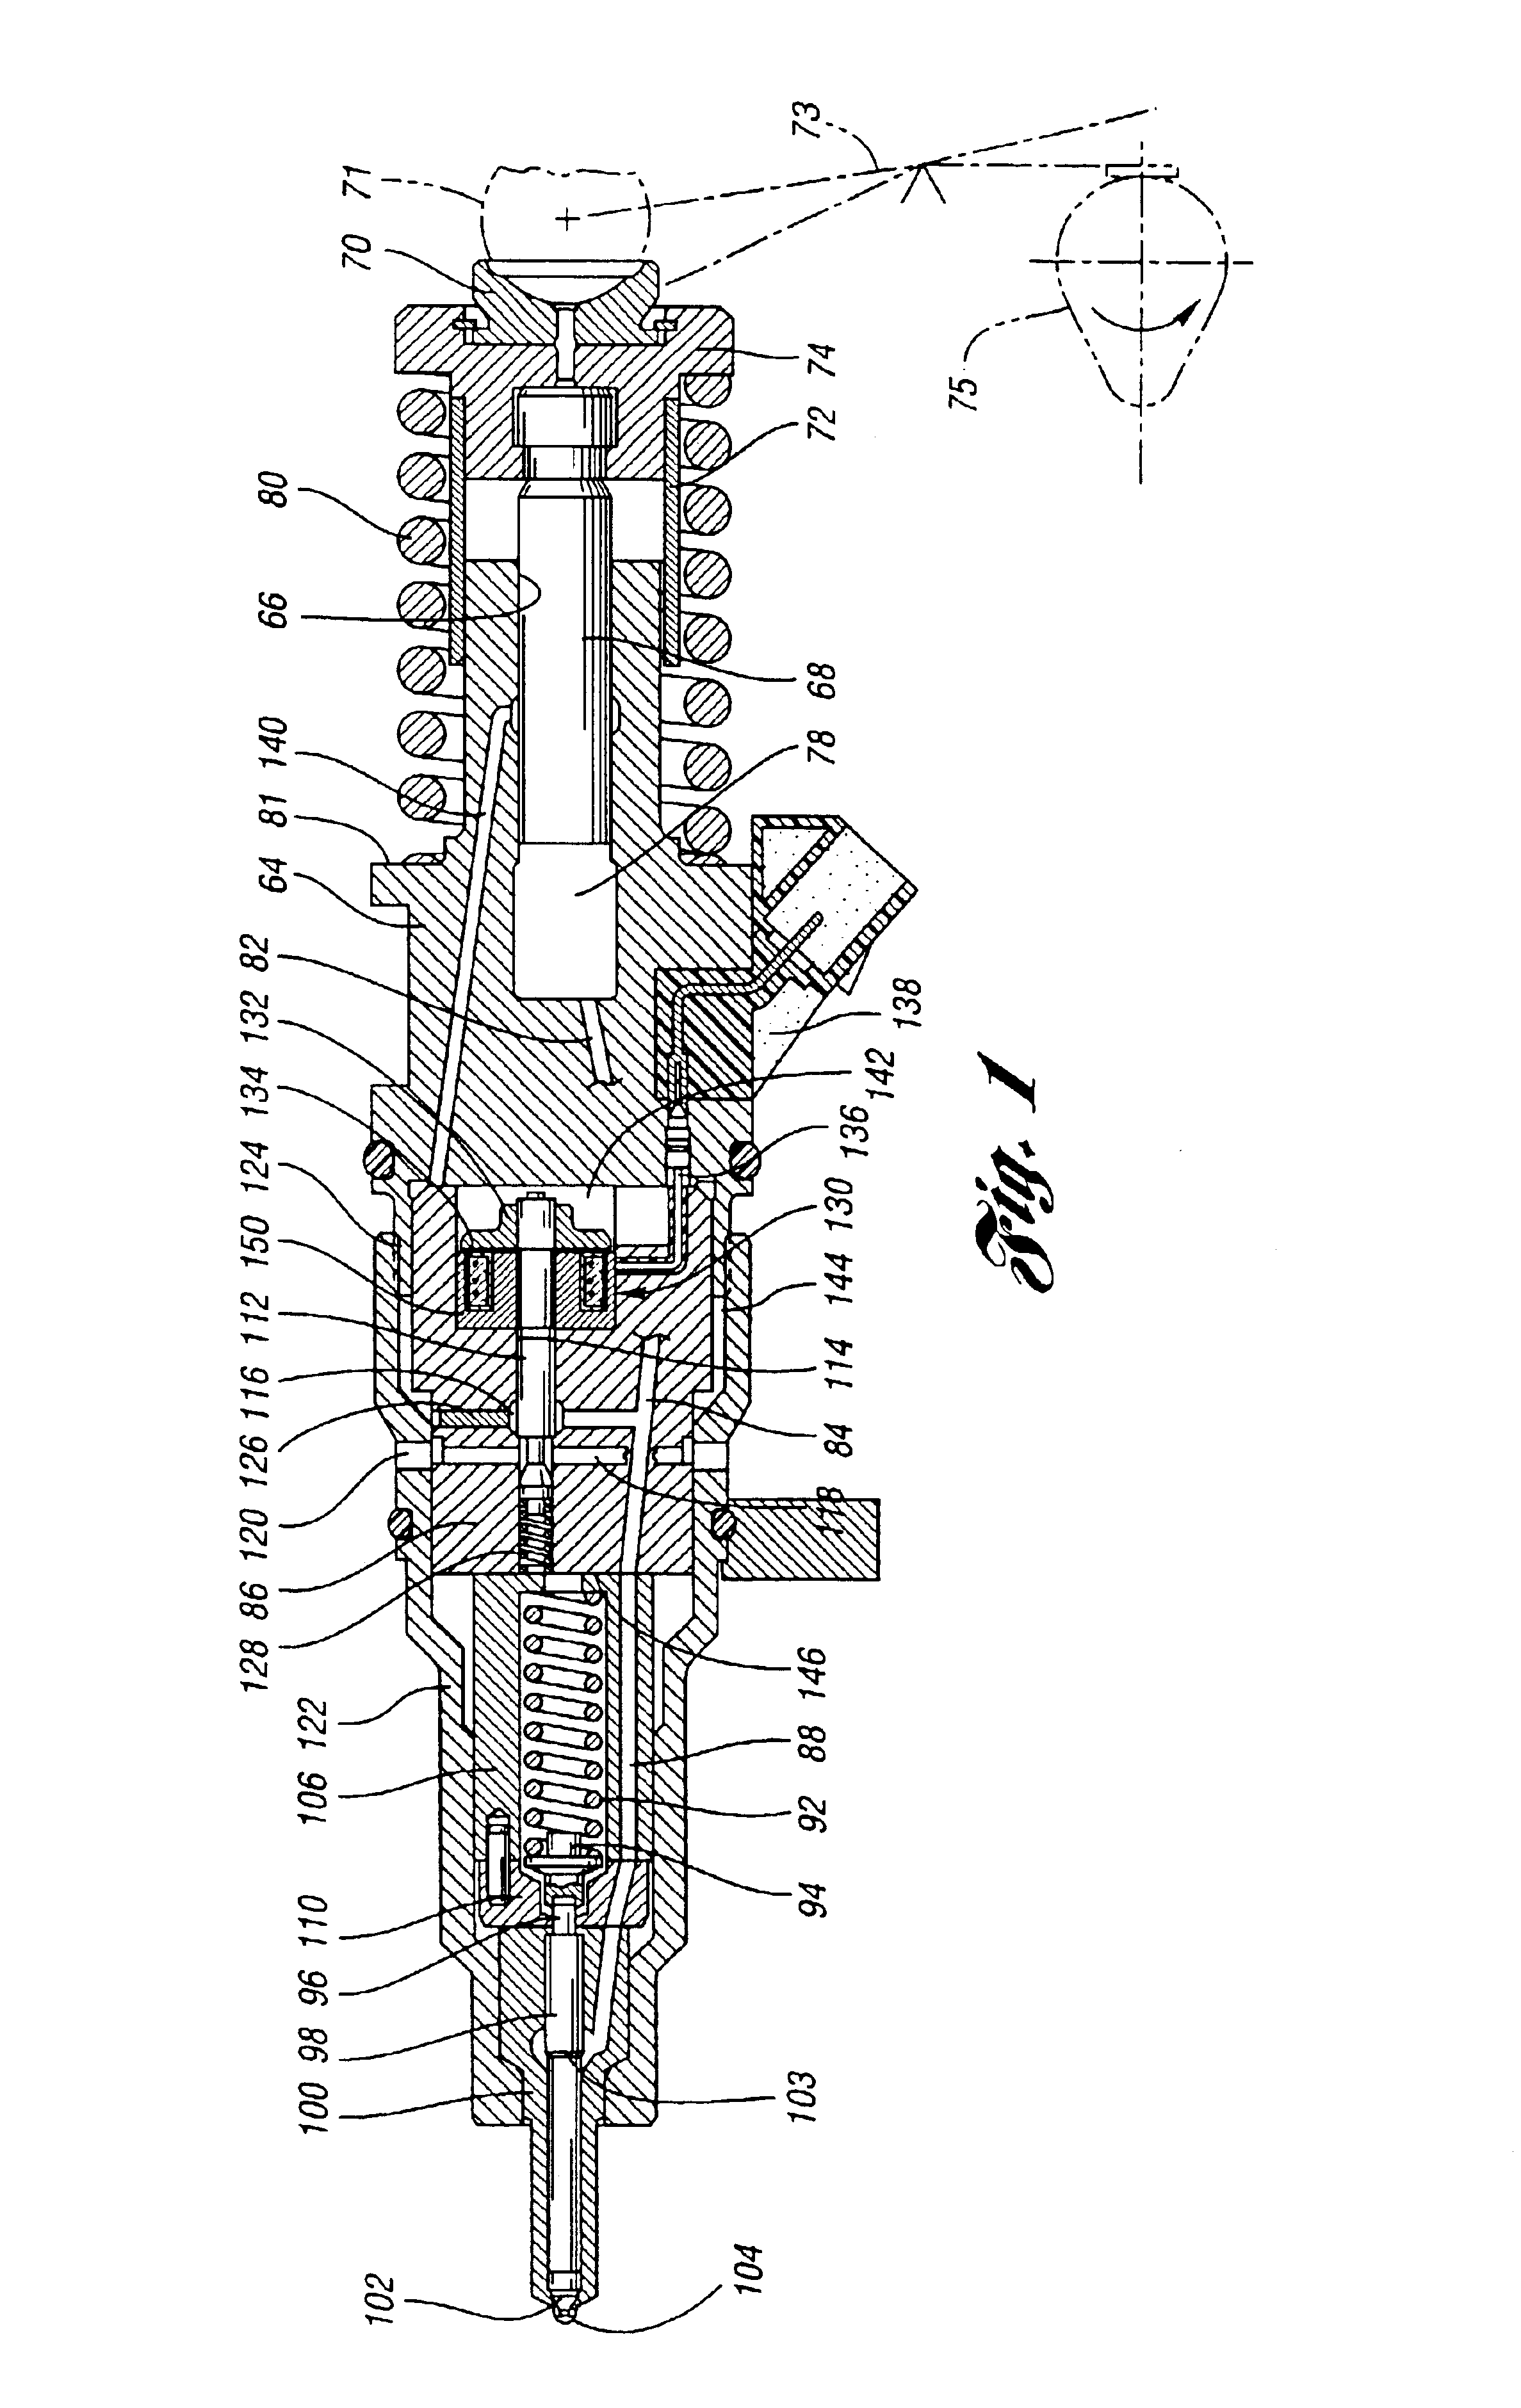 Fuel injector having segmented metal core